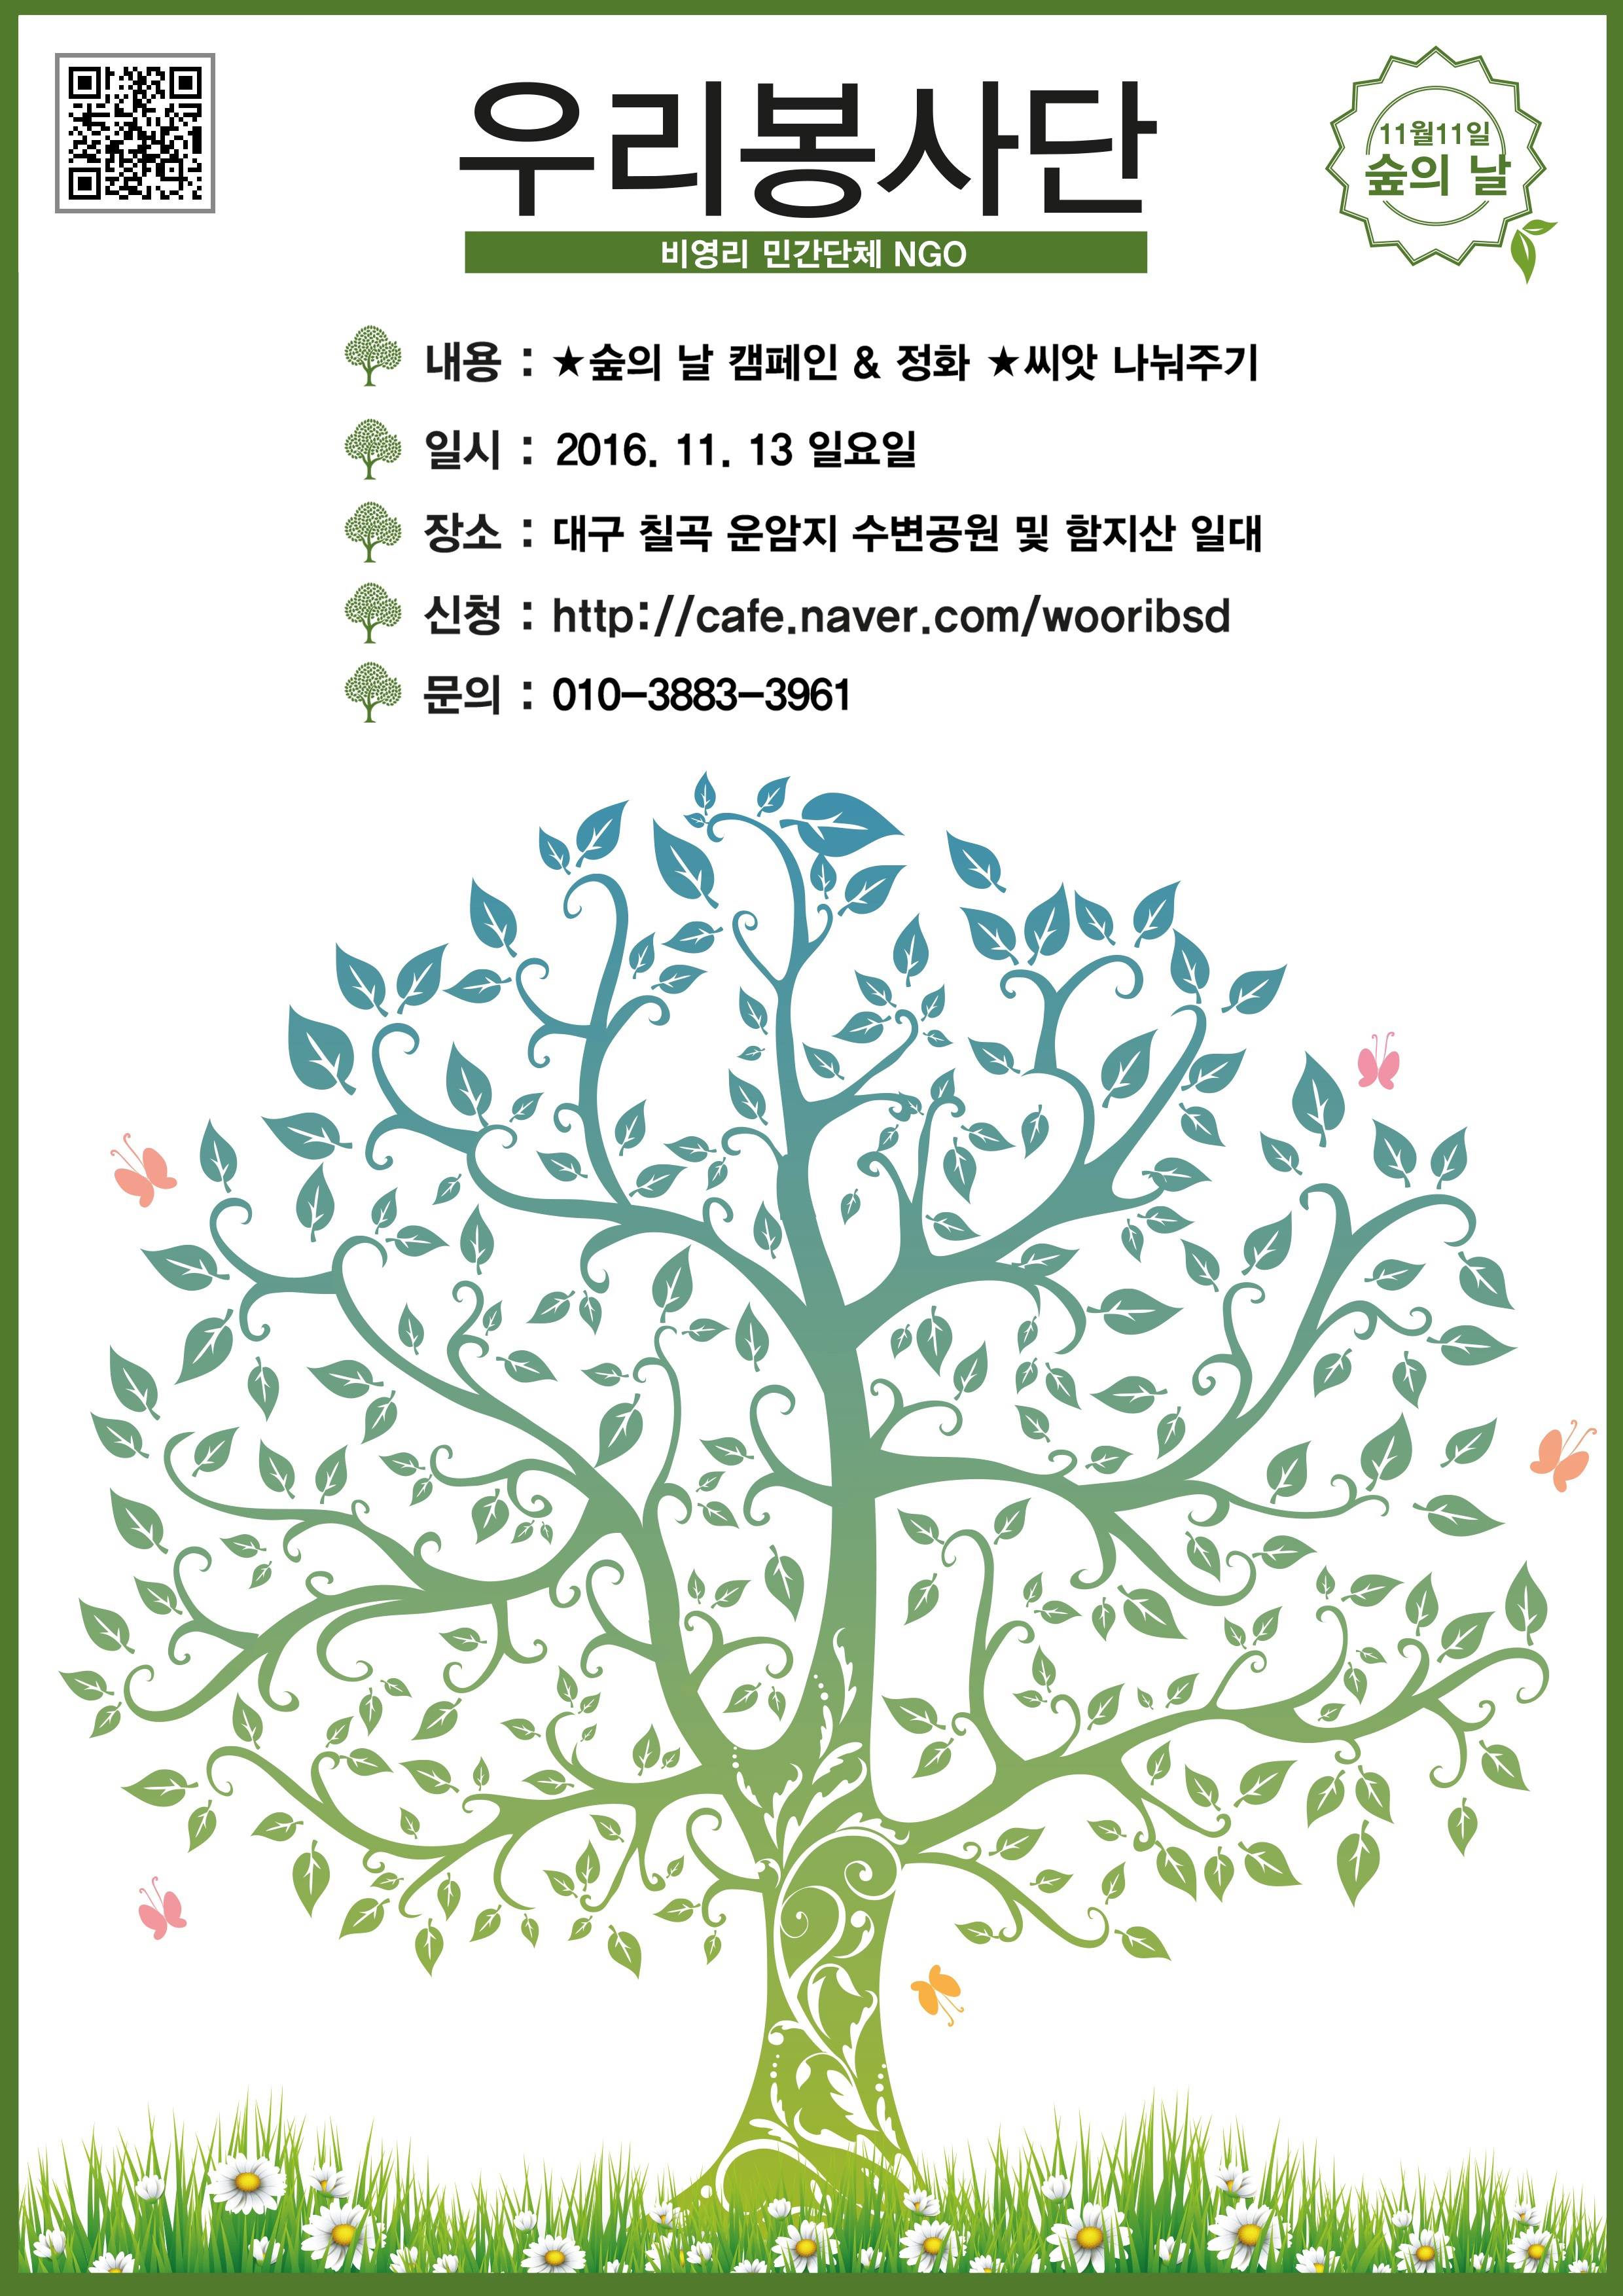 우리봉사단 숲의날 캠페인, 정화, 씨앗 나눠주기 봉사활동 안내